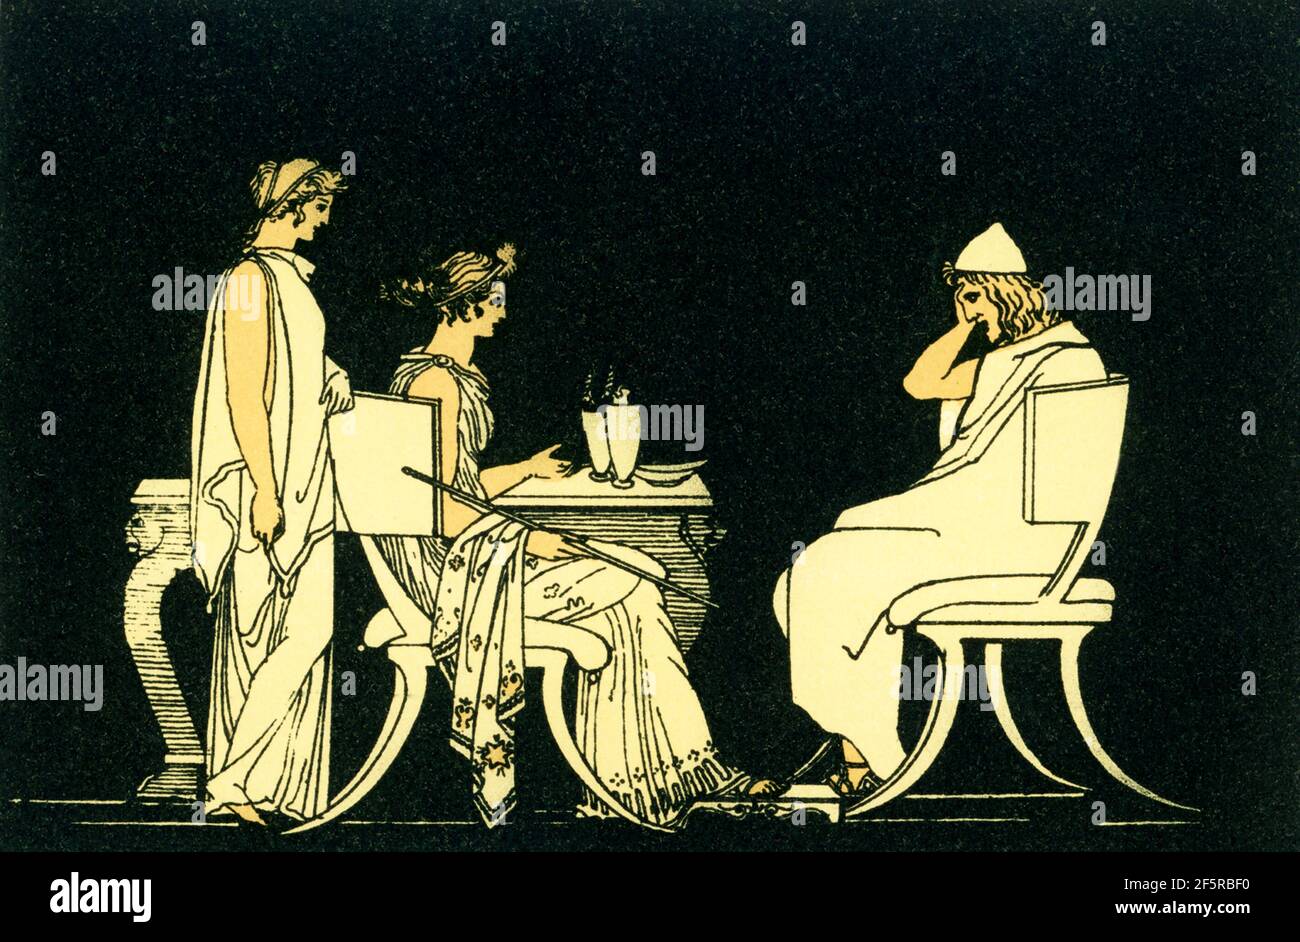 Diese Illustration von 1880s begleitete ein Buch über Homer und seine Epen, die Ilias und die Odyssee. Es zeigt die Szene mit dem griechischen Helden Odysseus (Ulysses) am Tisch von Circe. Nach der antiken griechischen Mythologie war Circe eine bekannte Zauberin. Die Tochter von Helios, verwandelte sie die Gefährten von Odysseus in Schweine. Odysseus ließ Circe den Bann brechen. Stockfoto